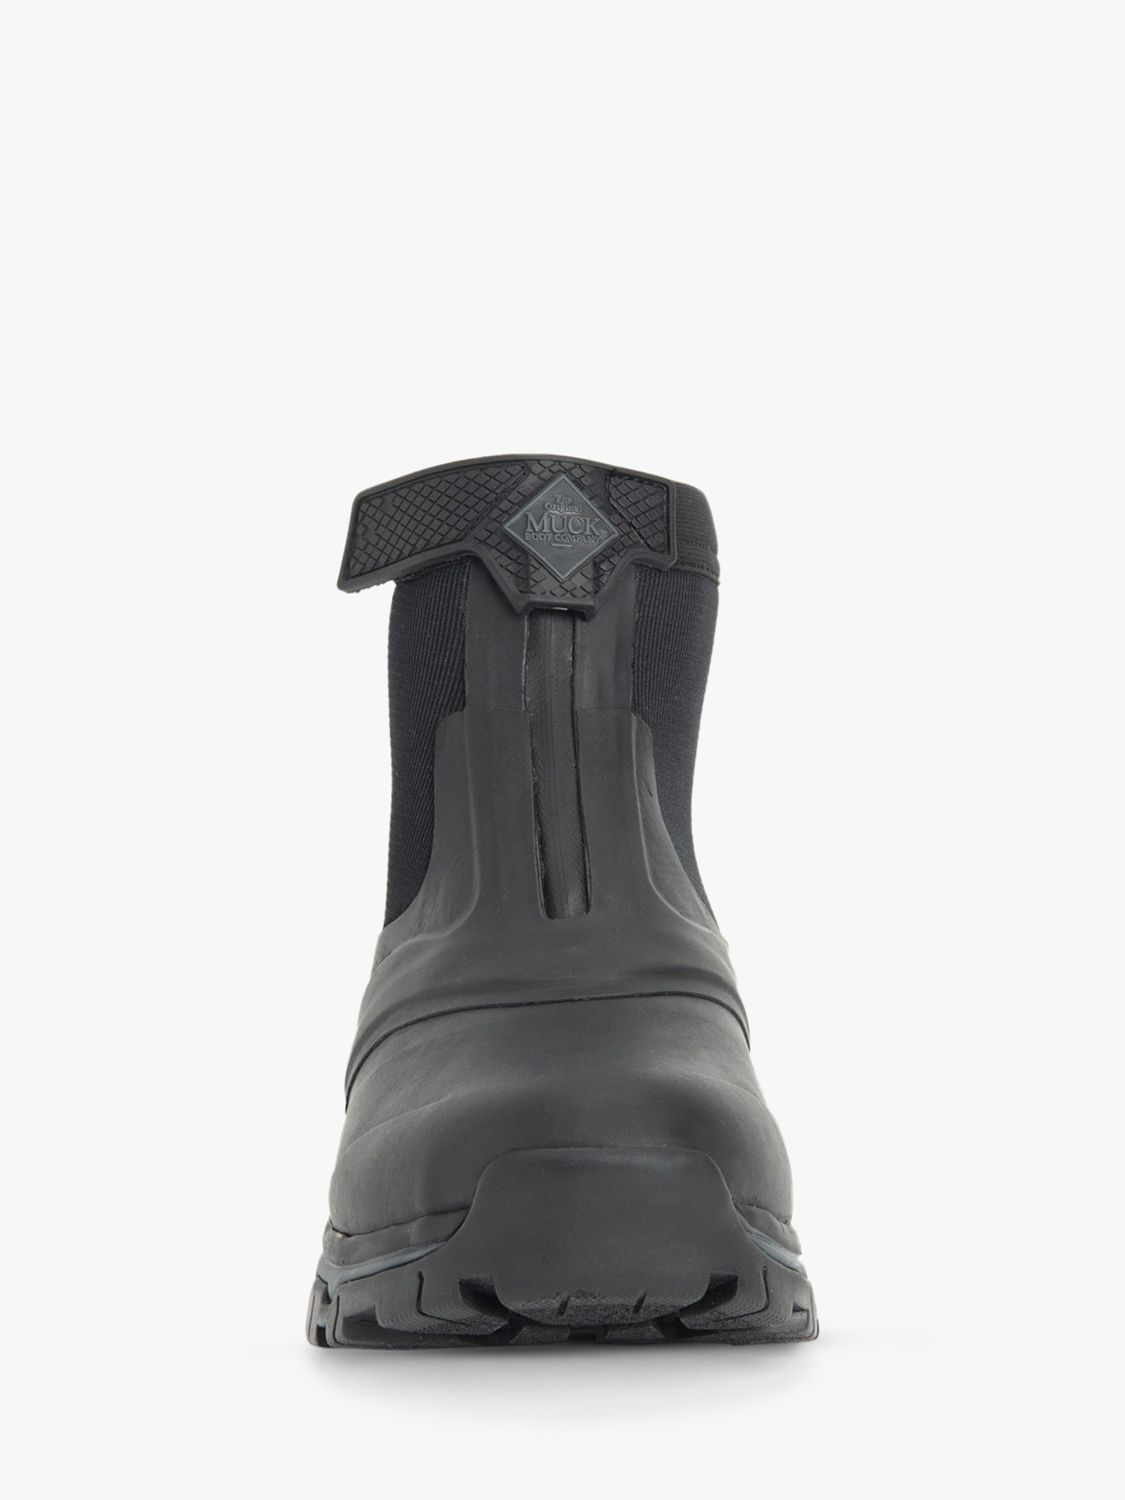 Muck Apex Zip Mid Wellington Boots, Black/Dark Shadow, 6